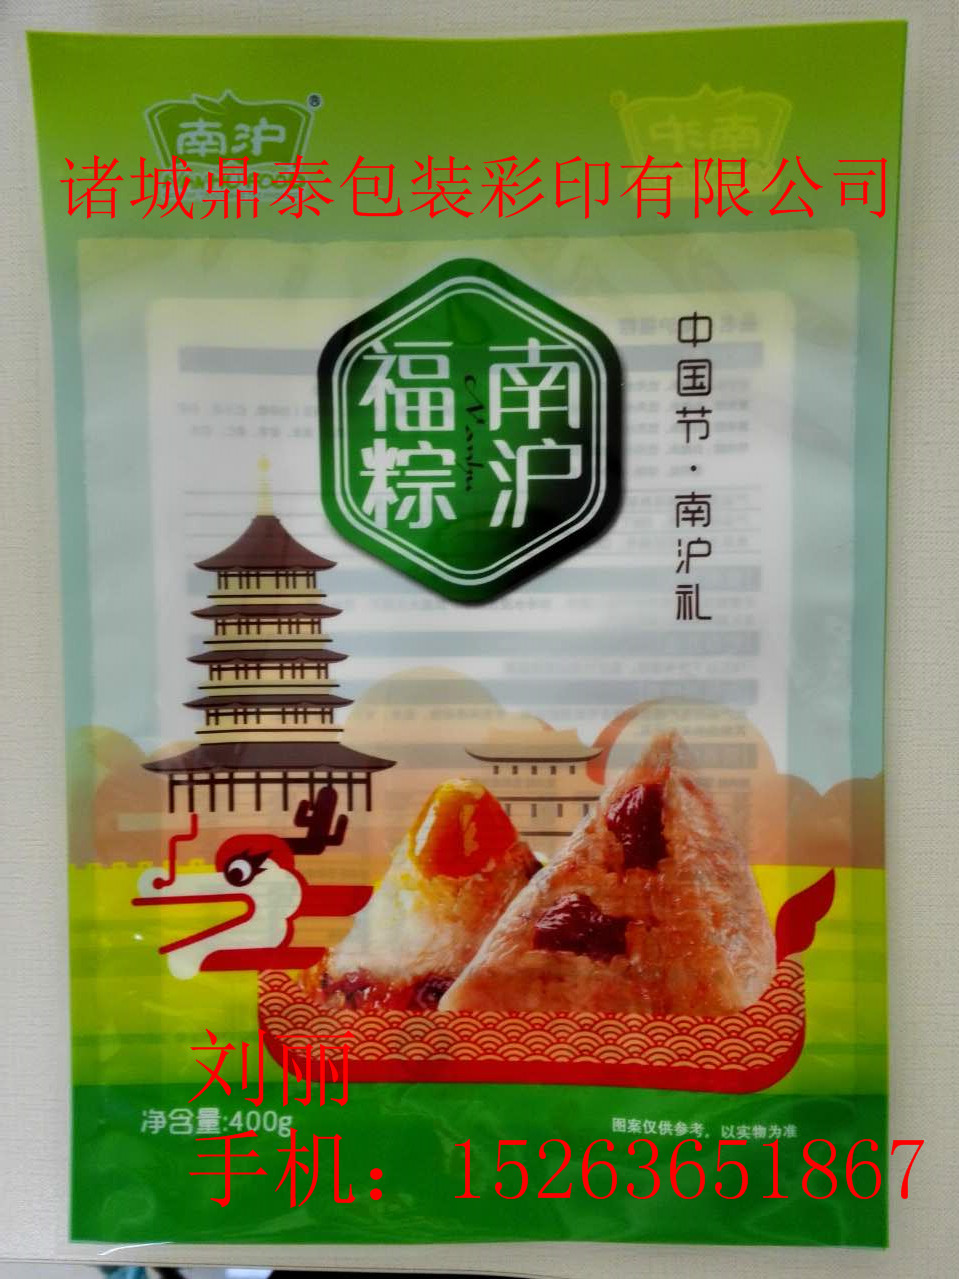 食品包装袋粽类包装，是由山东厂家定制制造。